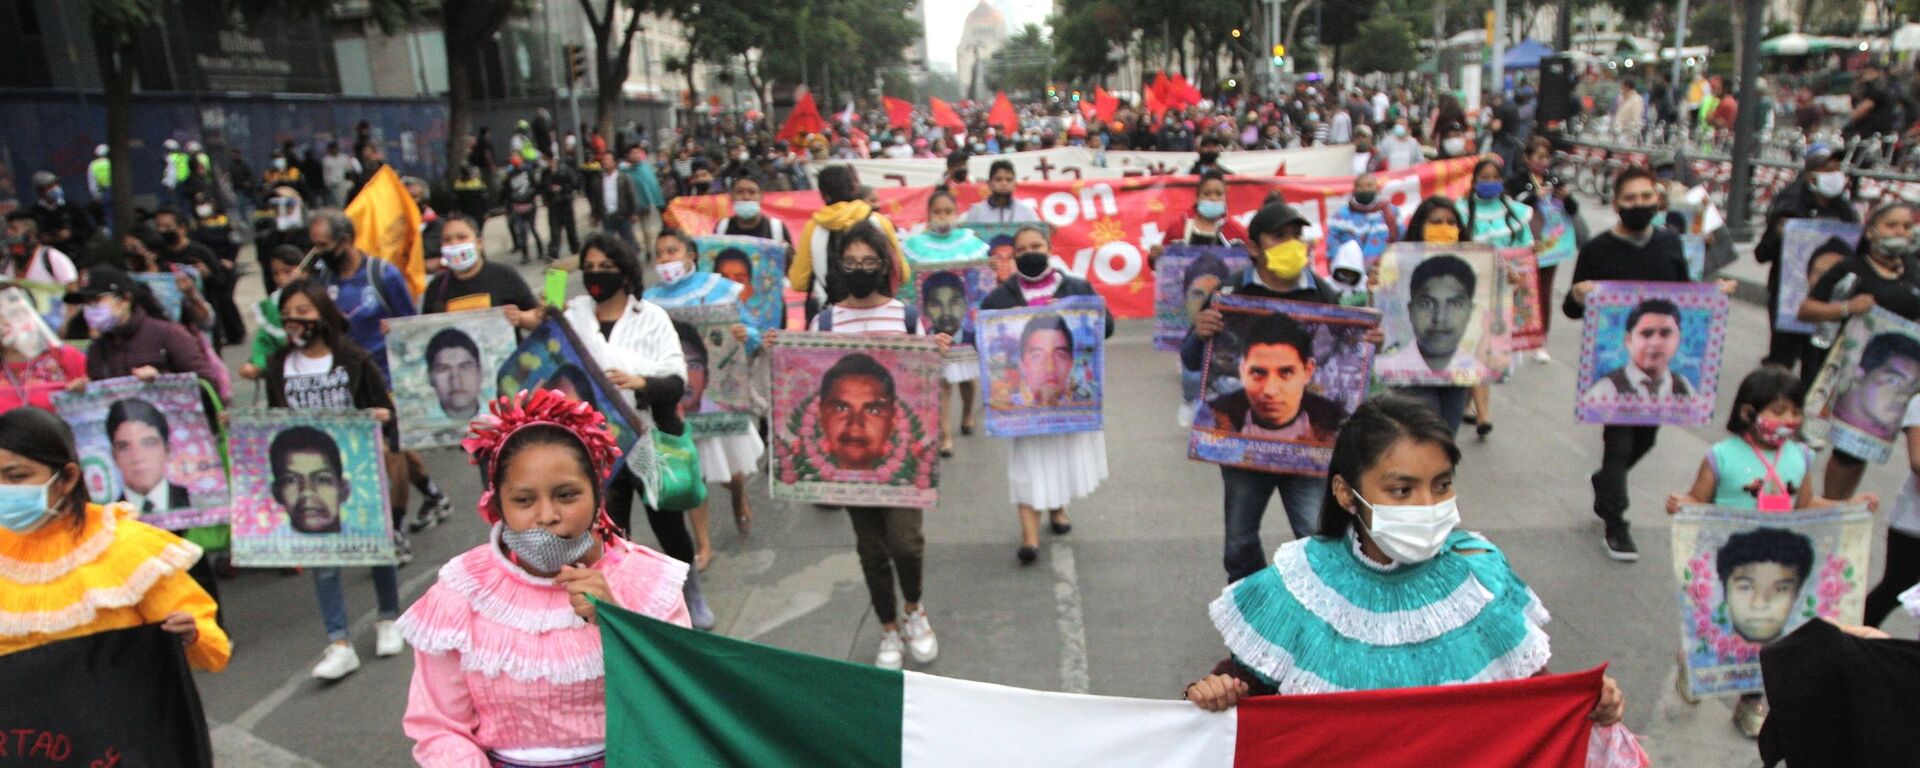 Conmemoran en CDMX seis años de la desaparición forzada de los estudiantes de Ayotzinapa - Sputnik Mundo, 1920, 07.09.2021